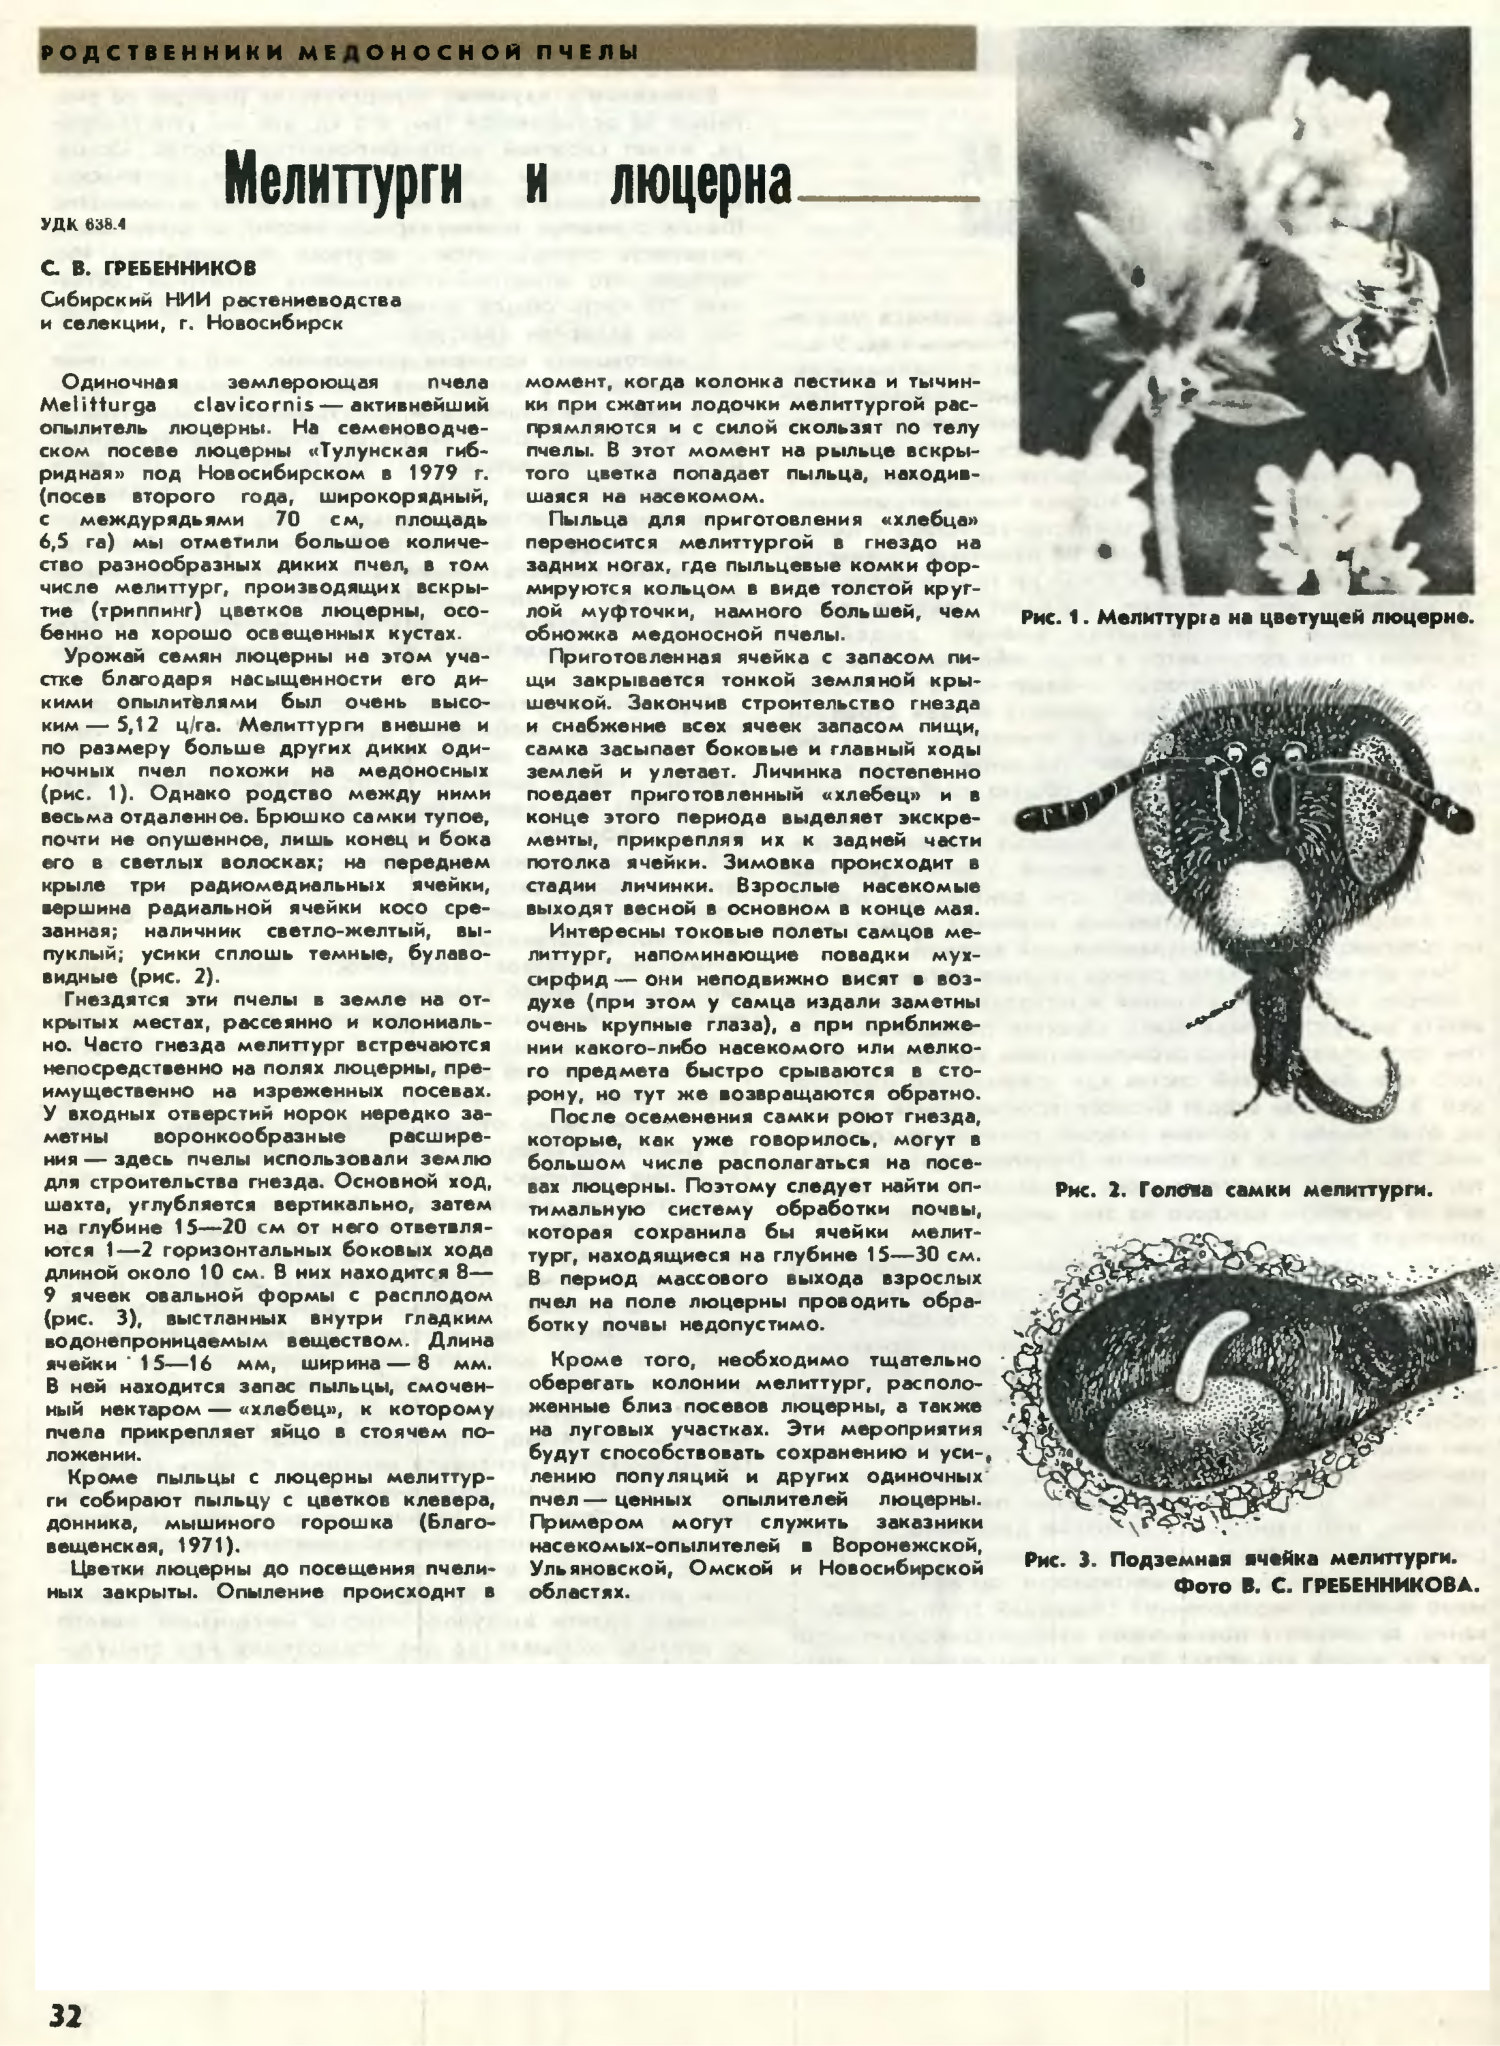 Мелиттурги и люцерна. С.В. Гребенников. Пчеловодство, 1980, №7, с.32. Фотокопия